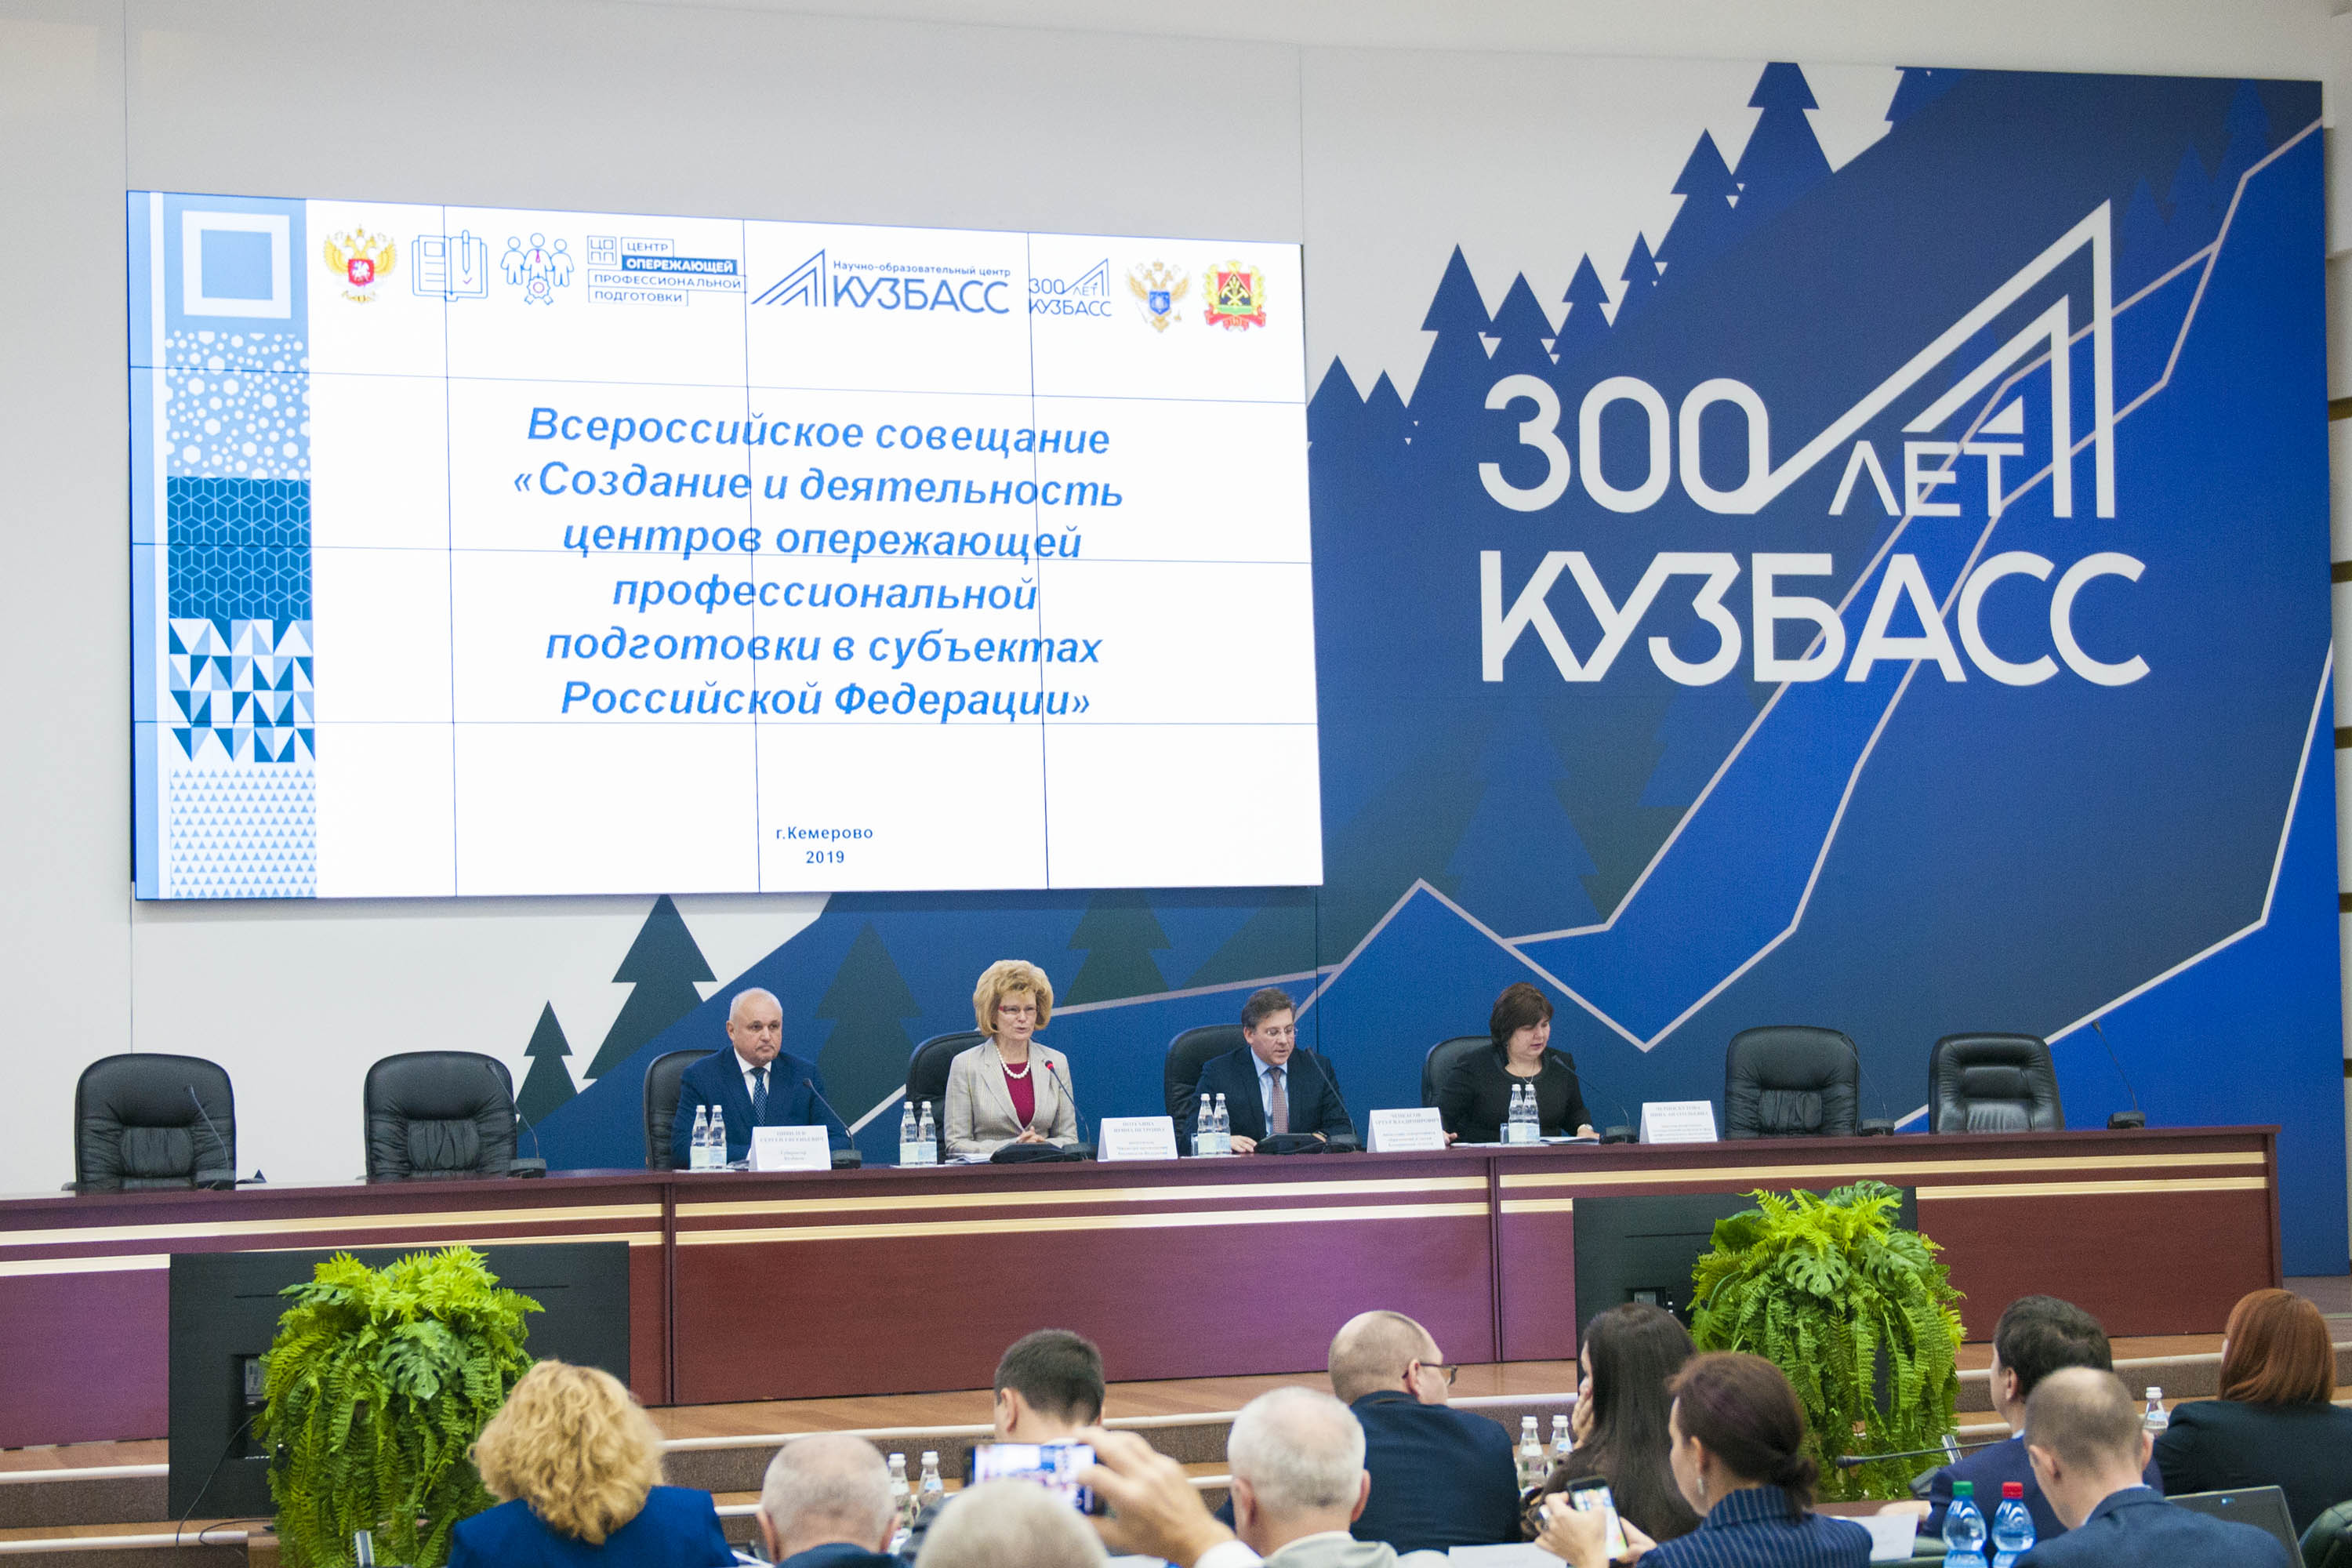 Всероссийское совещание по вопросам создания и деятельности центров опережающей профессиональной подготовки в субъектах РФ прошло в Кузбассе